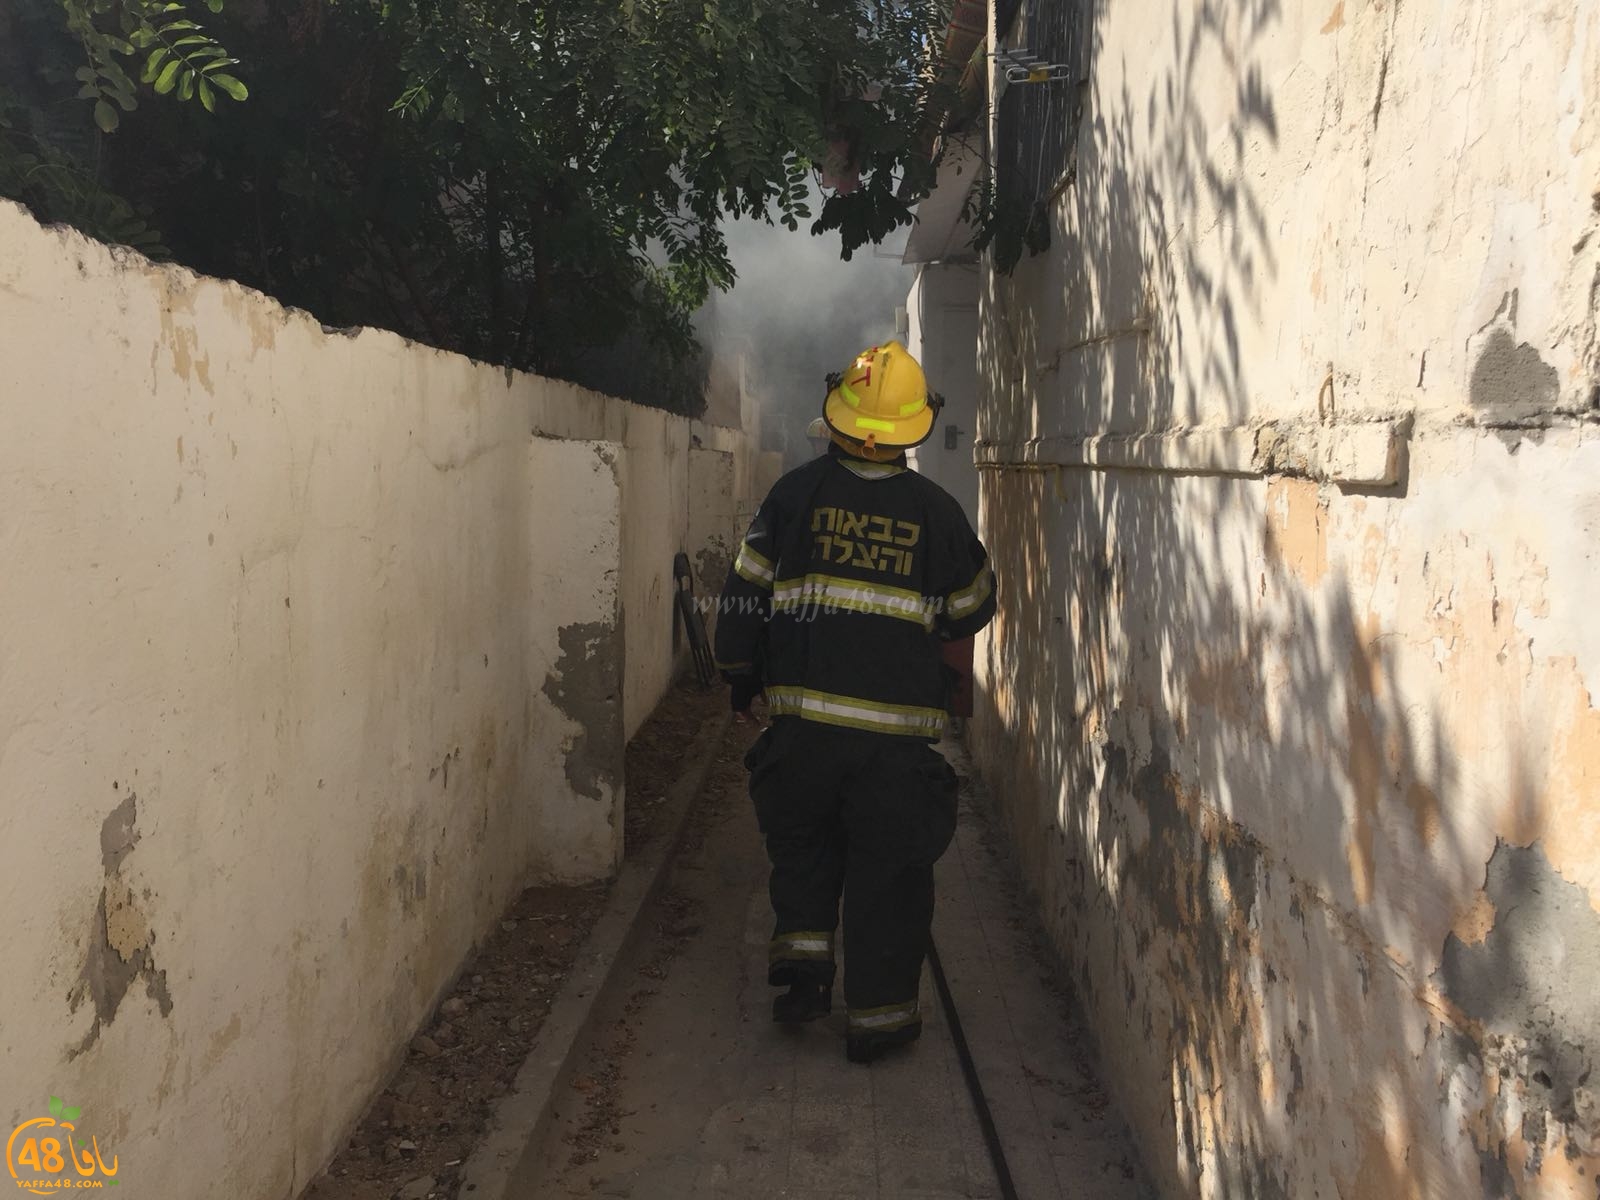  بالصور: حريق داخل احد البيوت بيافا دون وقوع اصابات  